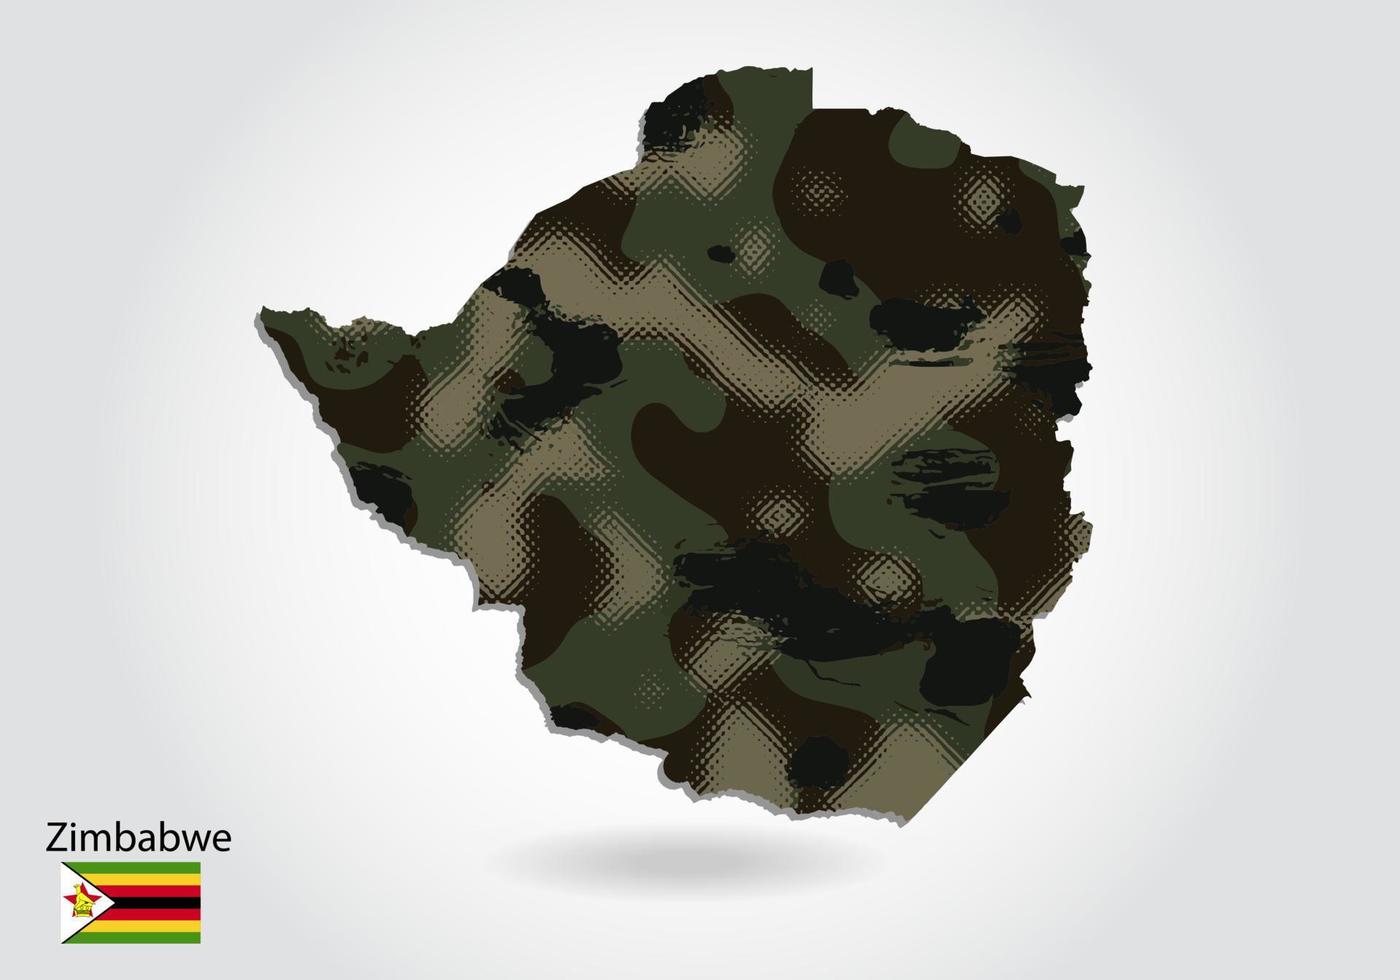 carte du zimbabwe avec motif camouflage, forêt - texture verte sur la carte. concept militaire pour l'armée, le soldat et la guerre. armoiries, drapeau. vecteur